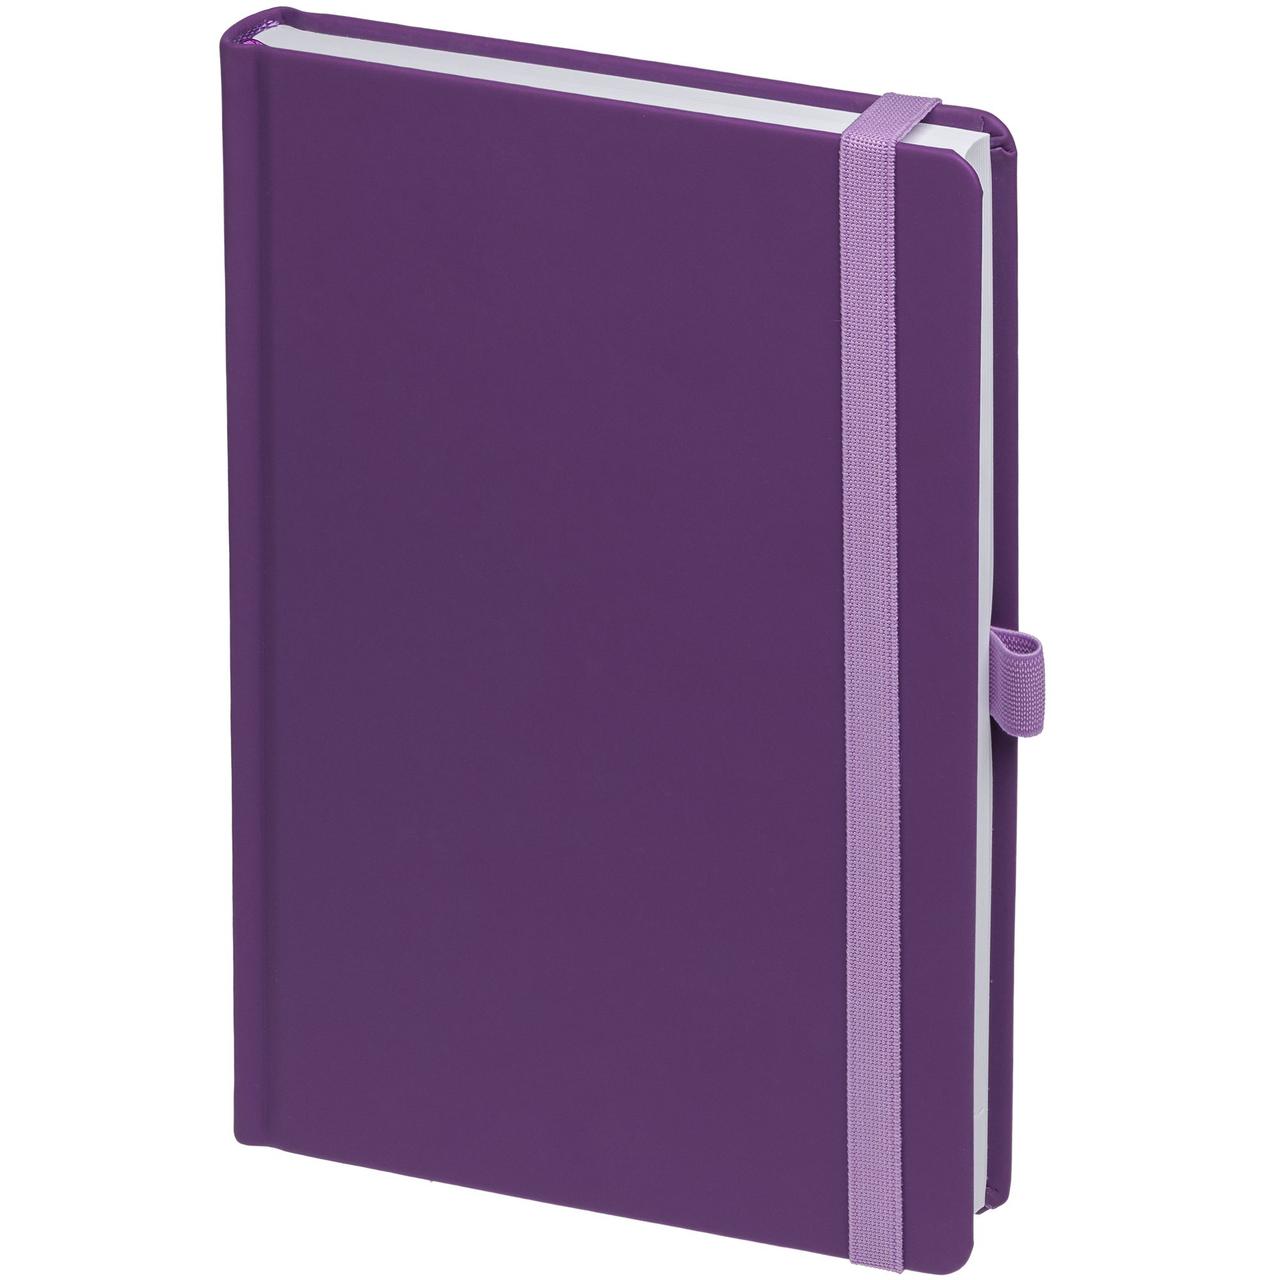 Ежедневник Favor, недатированный, фиолетовый (артикул 17072.70), фото 1